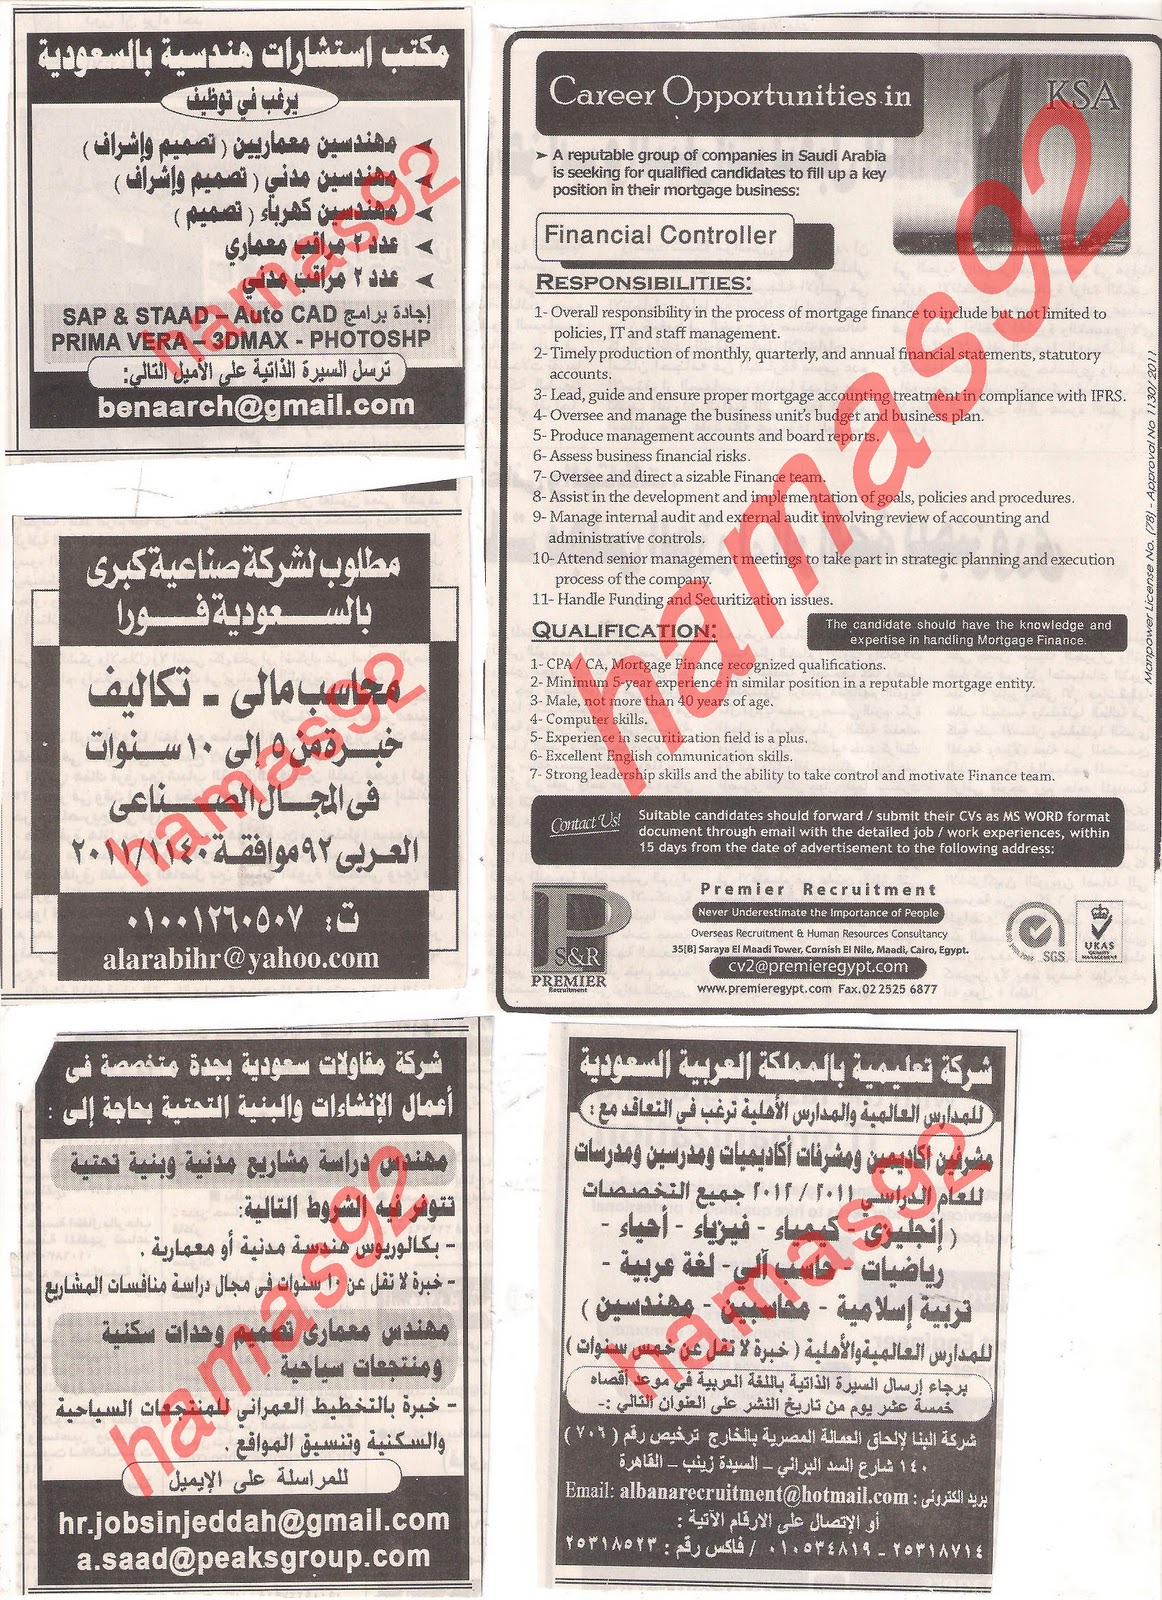 وظائف جريدة اهرام الجمعة 2\12\2011 , الجزء الثانى وظائف السعودية  Picture+011